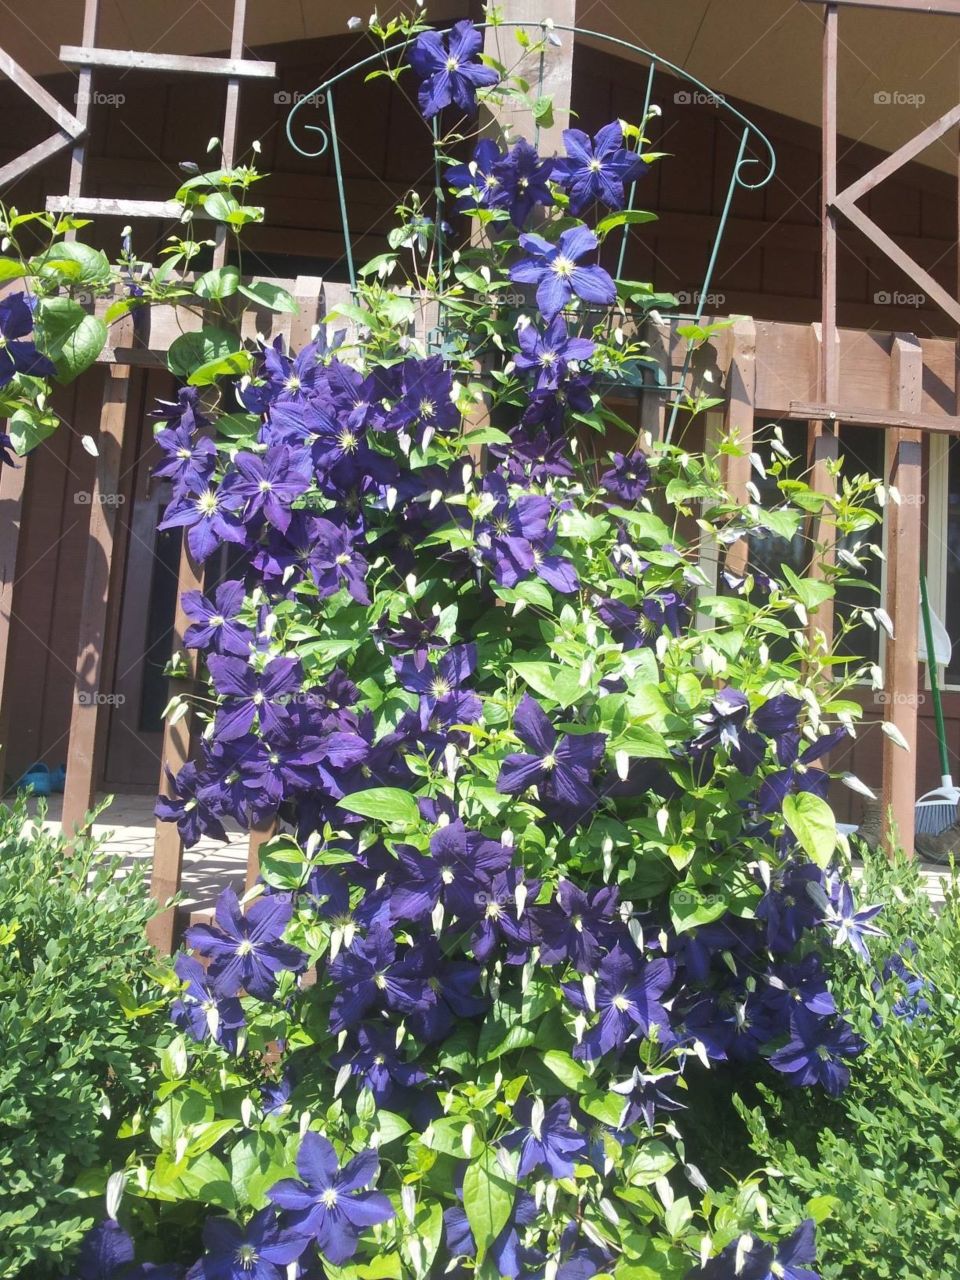 Purple flowering clematis vine